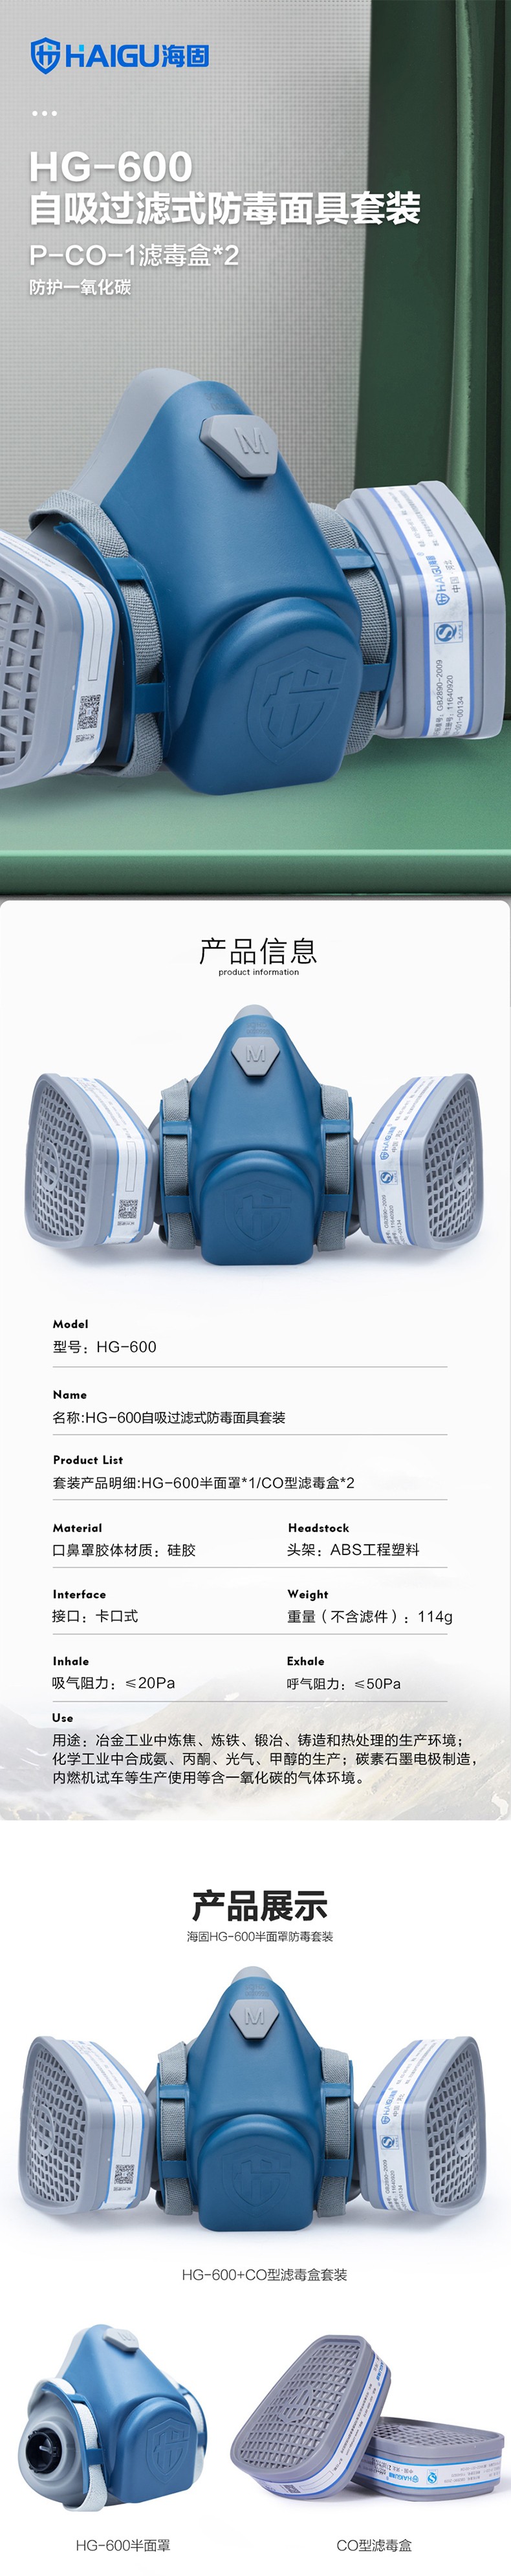 海固HG-600 P-CO-1一氧化碳气体防毒面具图片